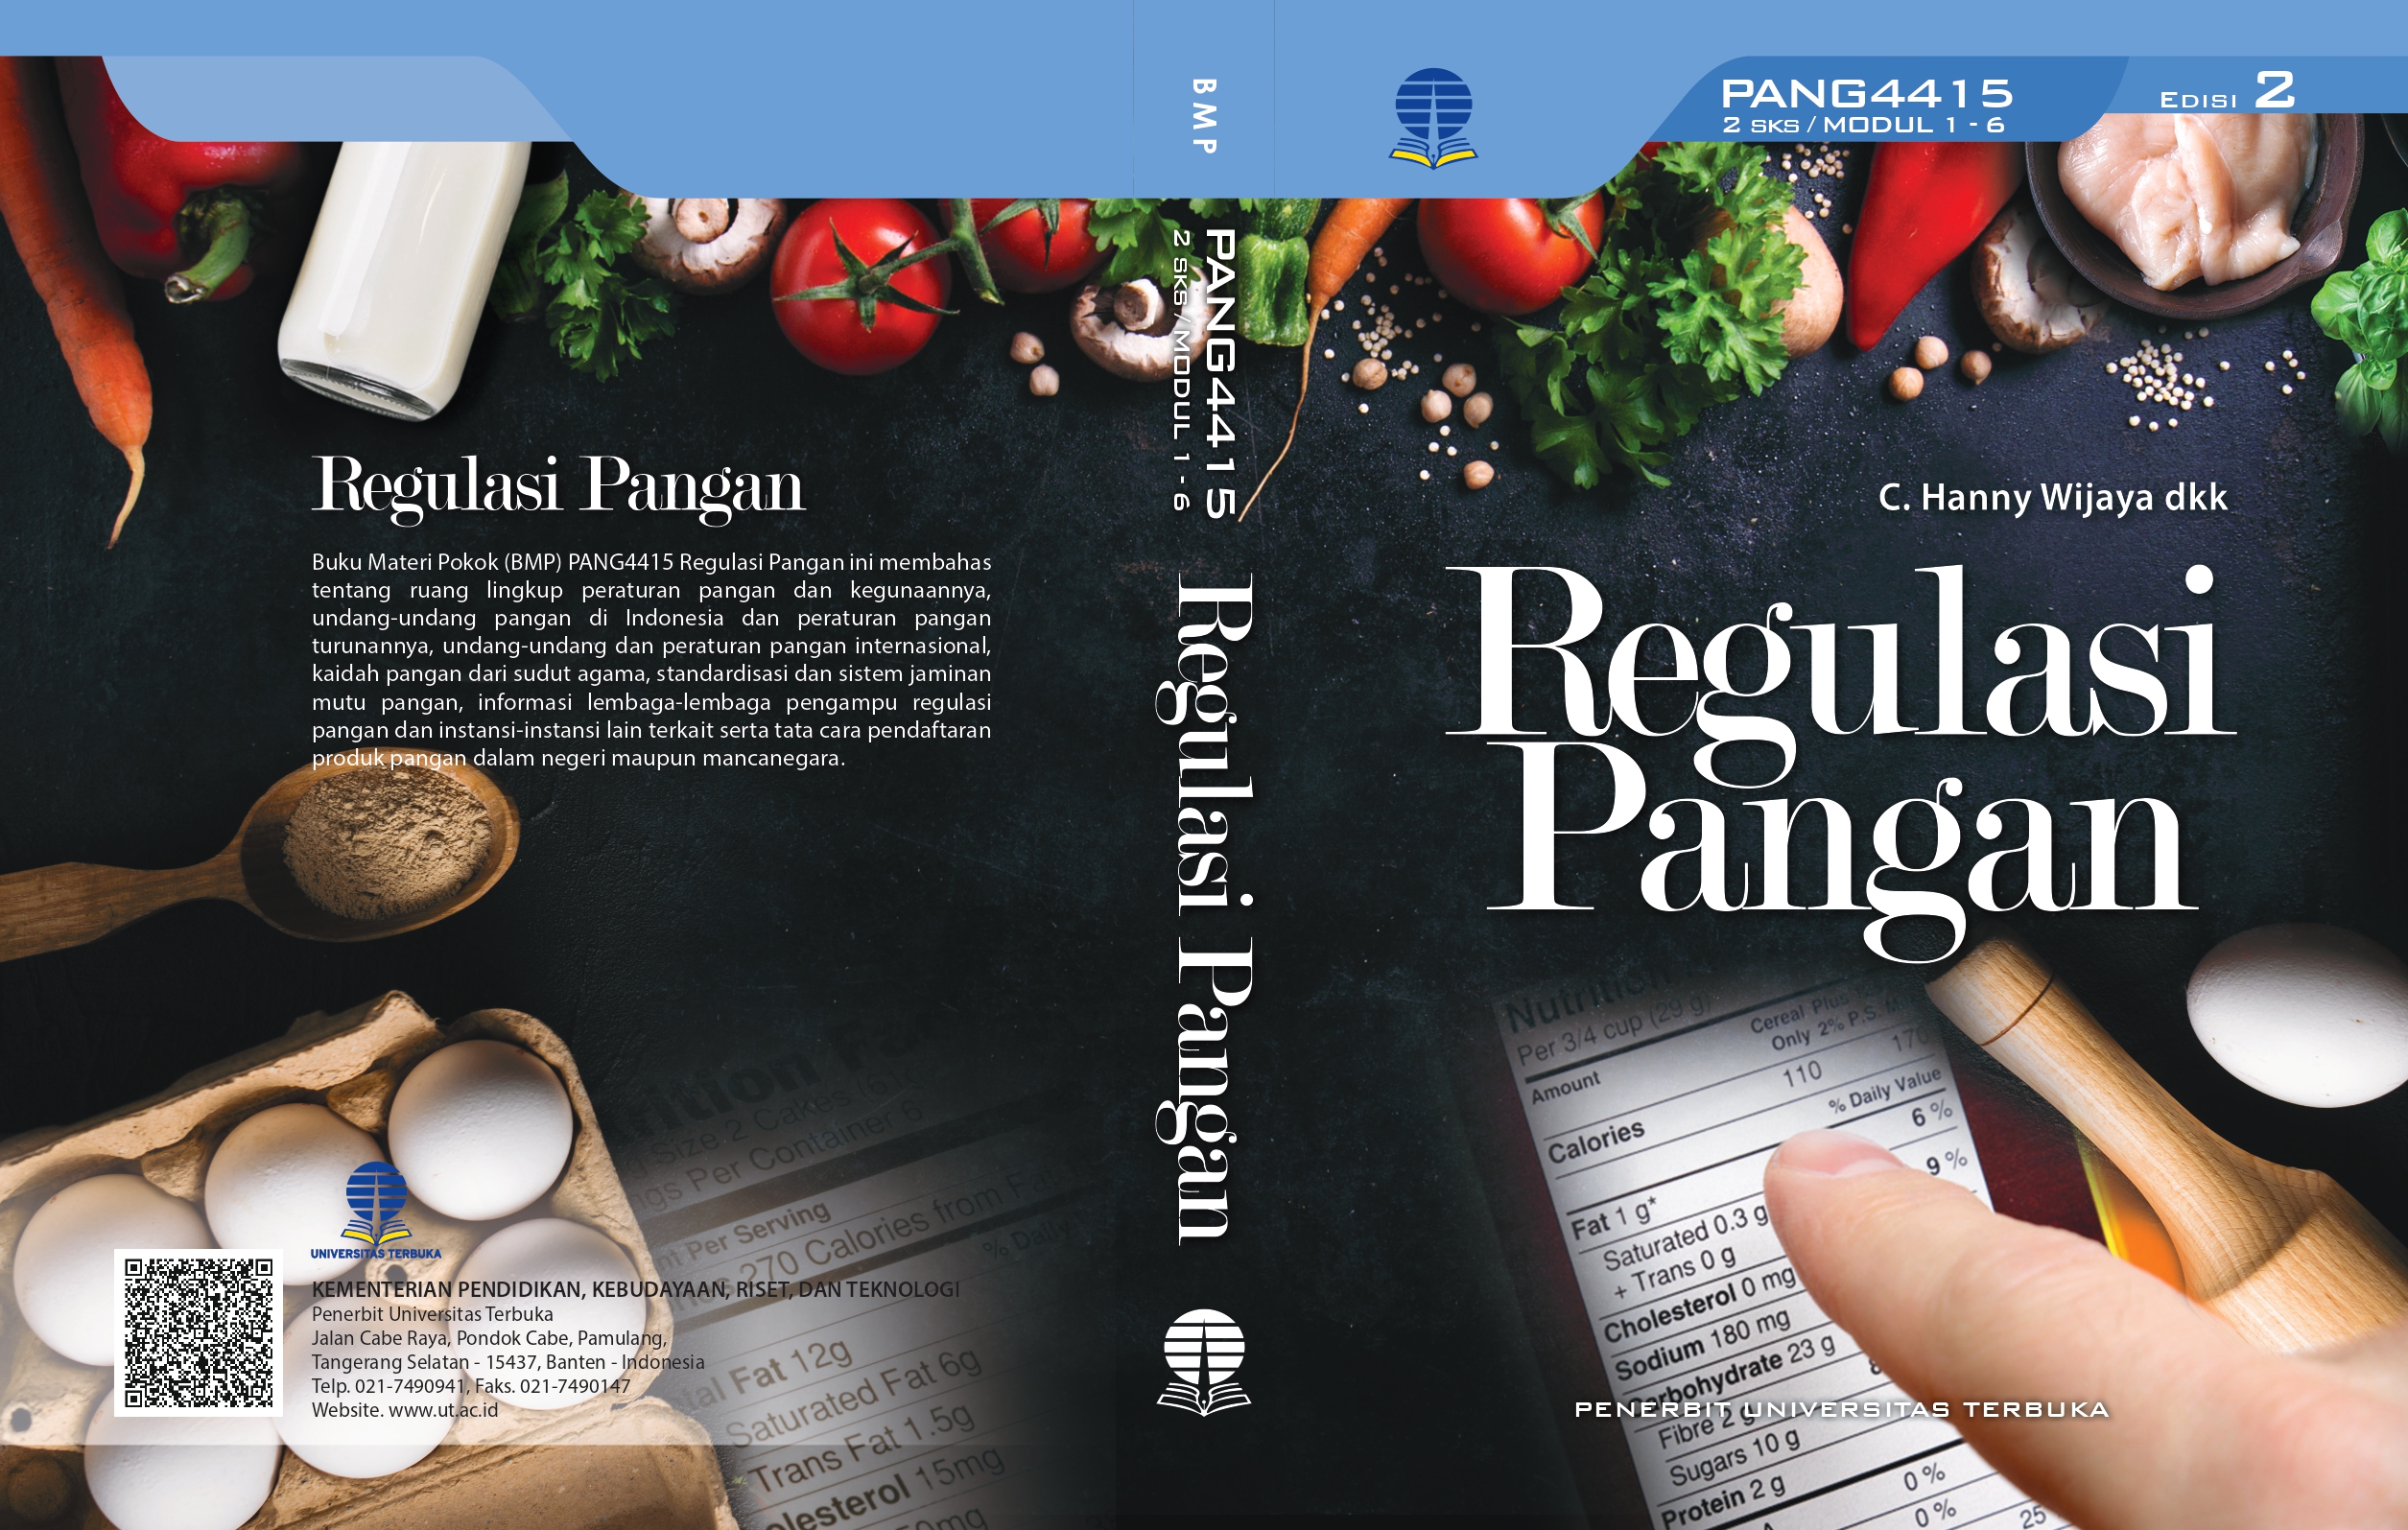 Regulasi Pangan PANG4415/001031602018